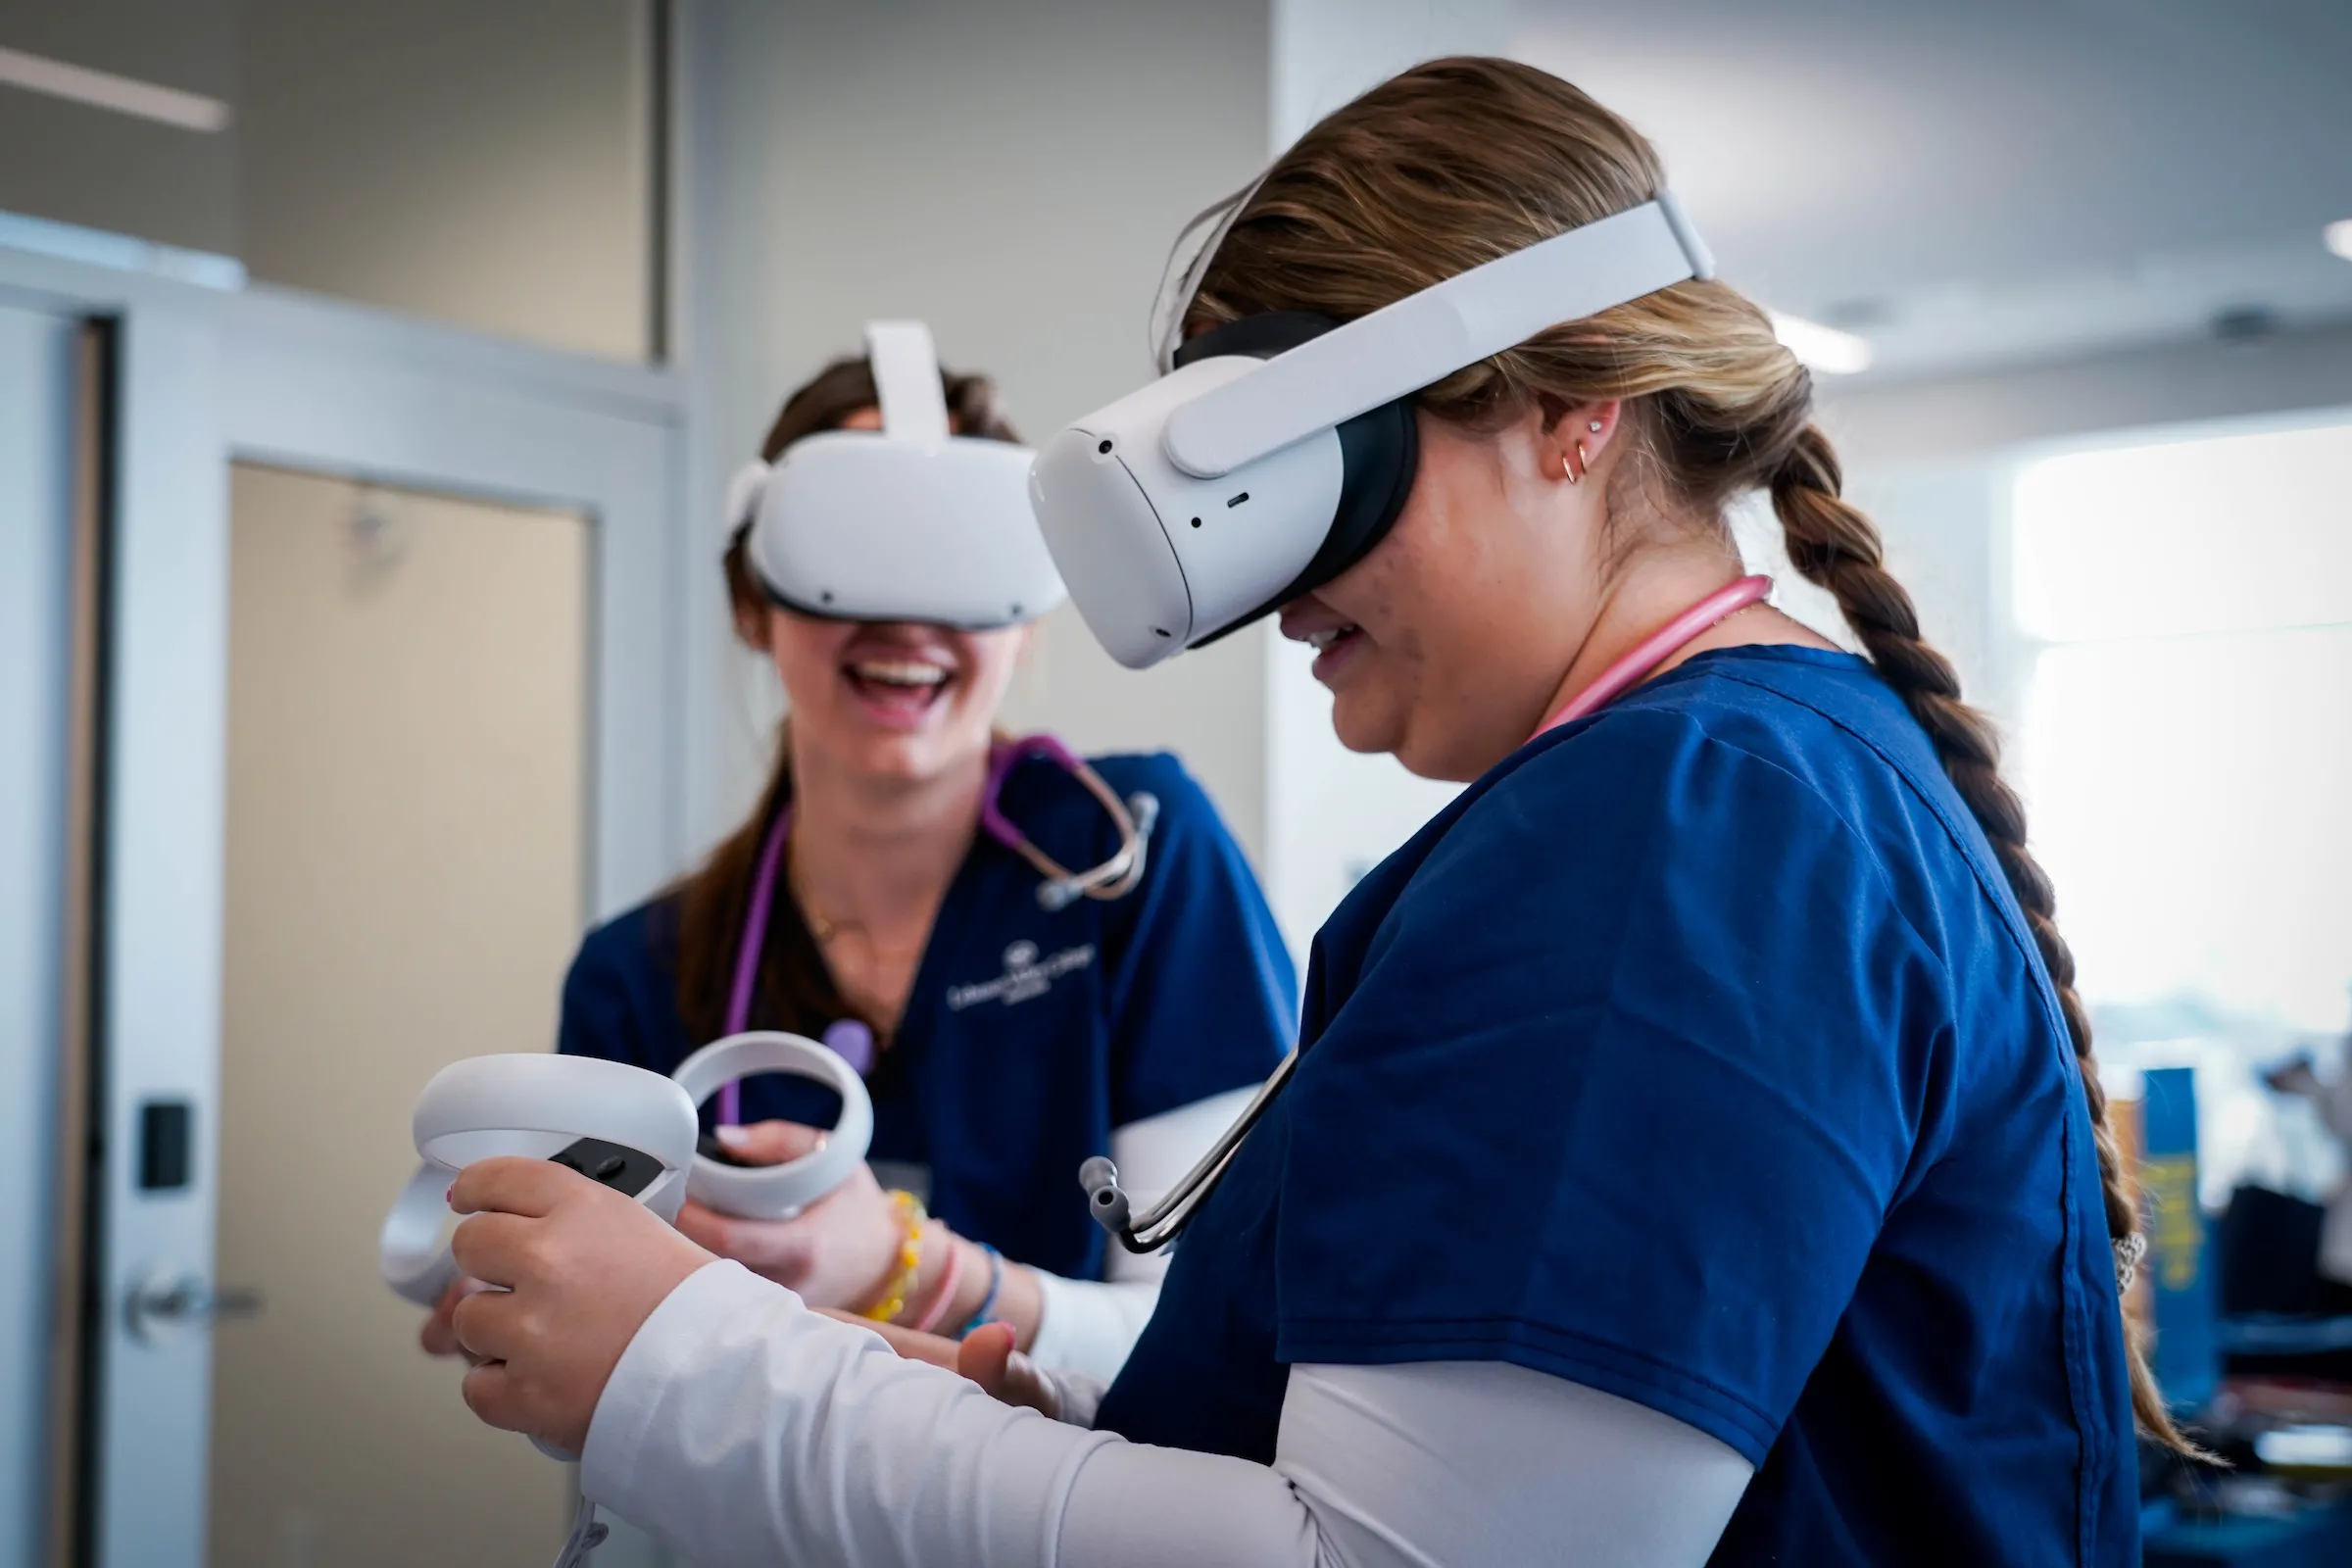 LVC nursing students use VR technology